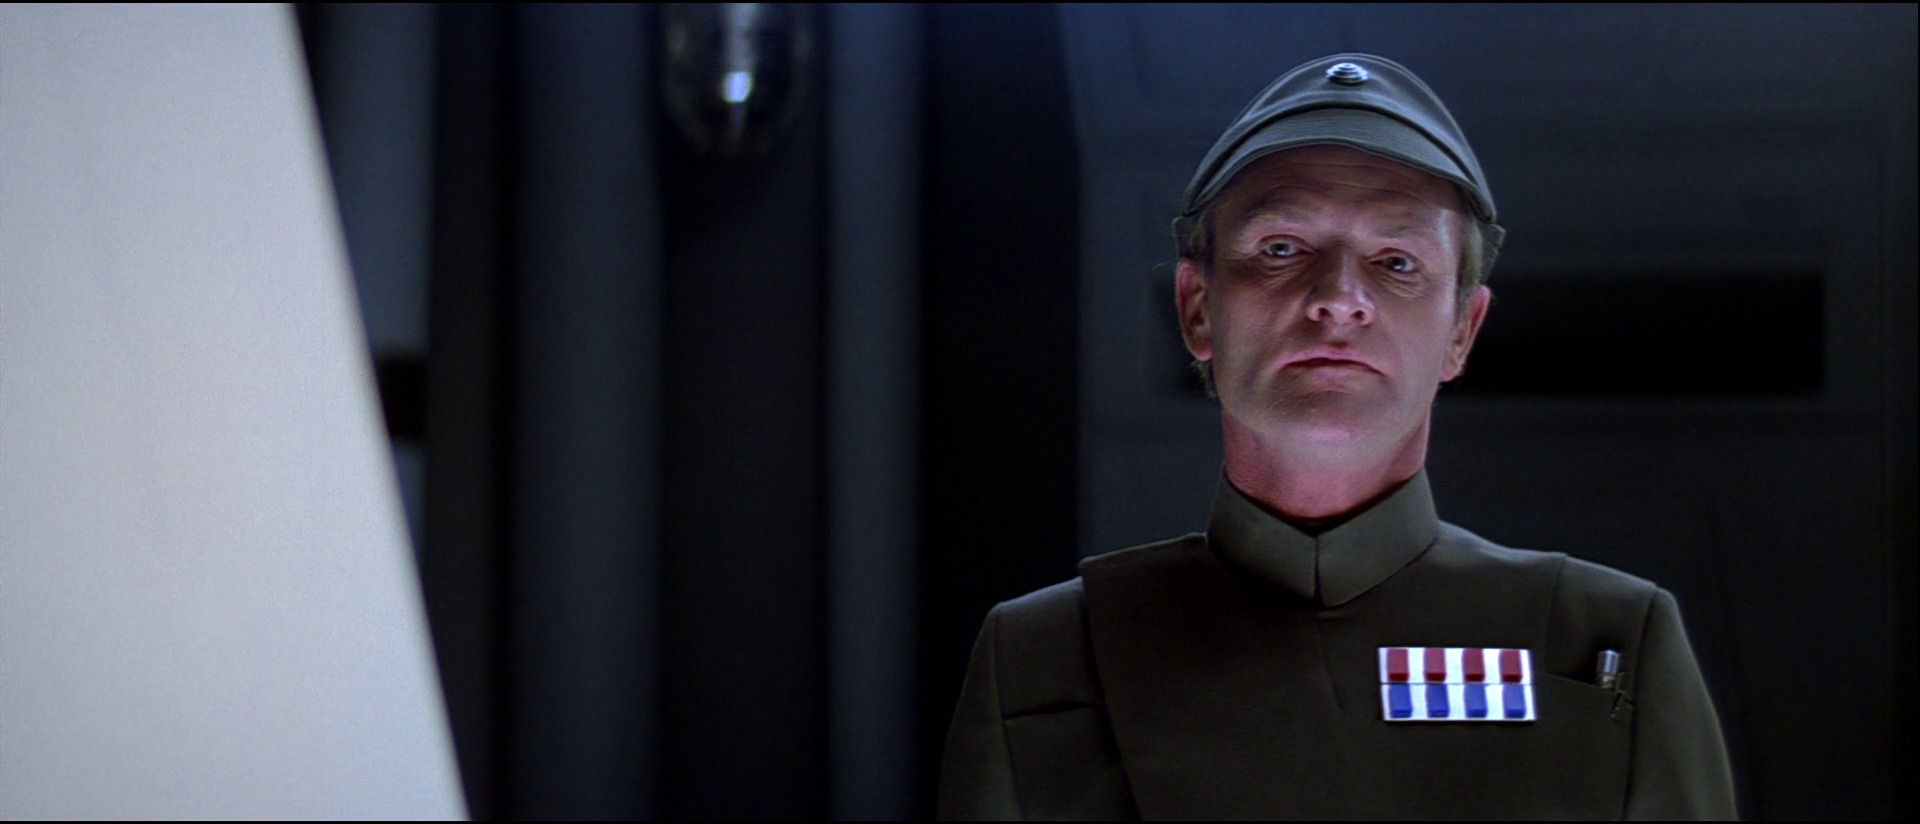 ս2:۹ս/ս5:۹ս Star.Wars.Episode.V.The.Empire.Strikes.Back.1980.1080p.B-4.png